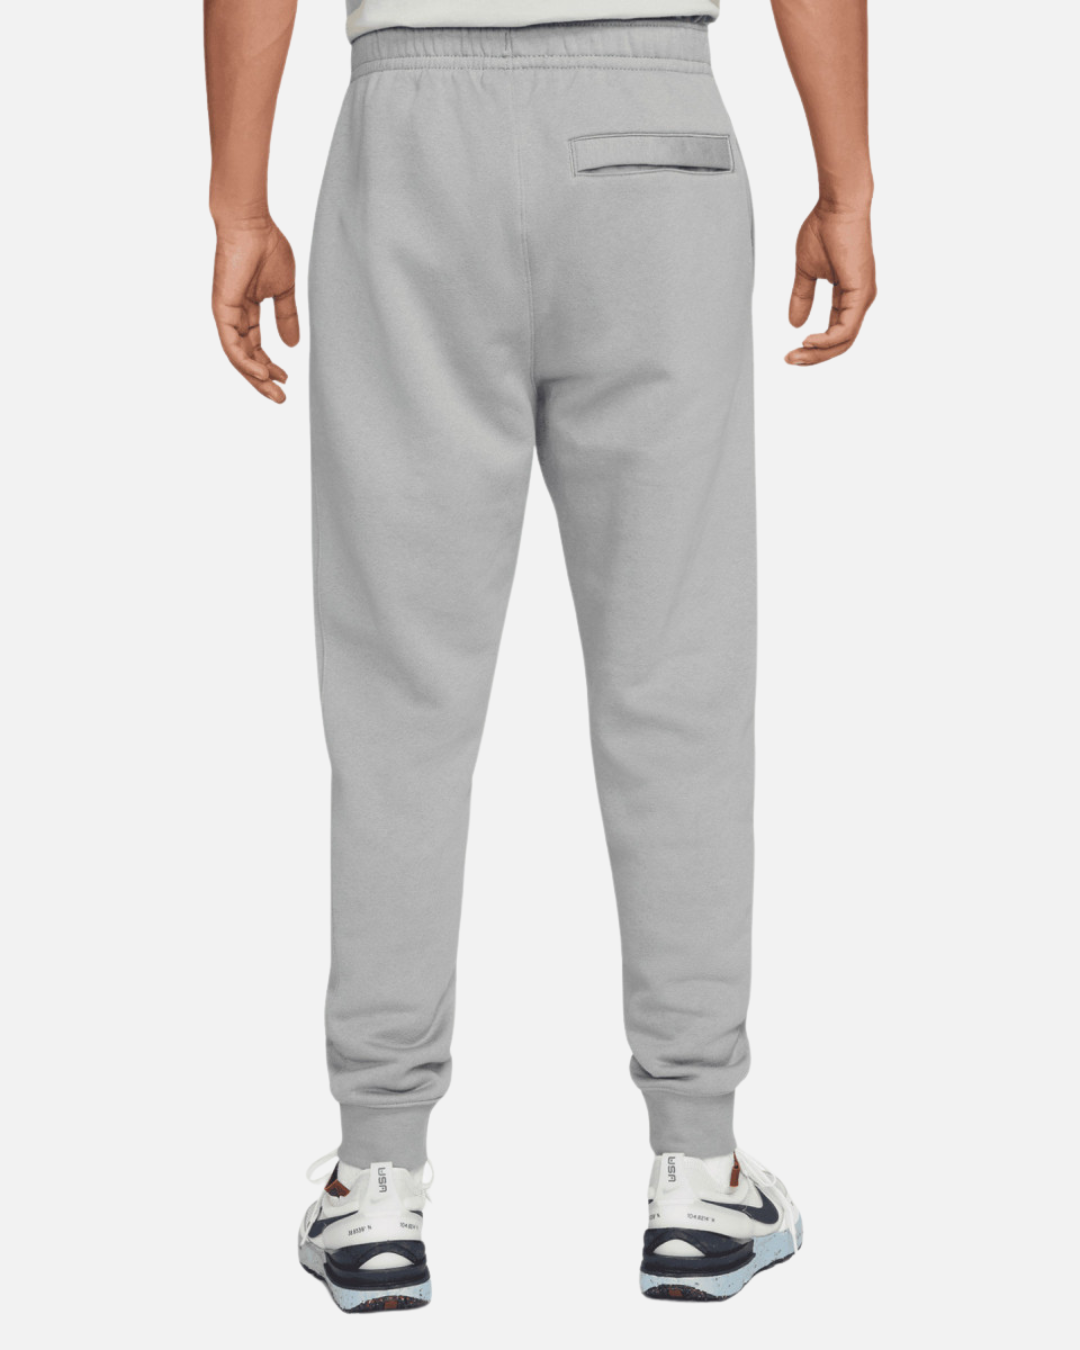 Pantalón jogging Nike Fleece - Gris claro